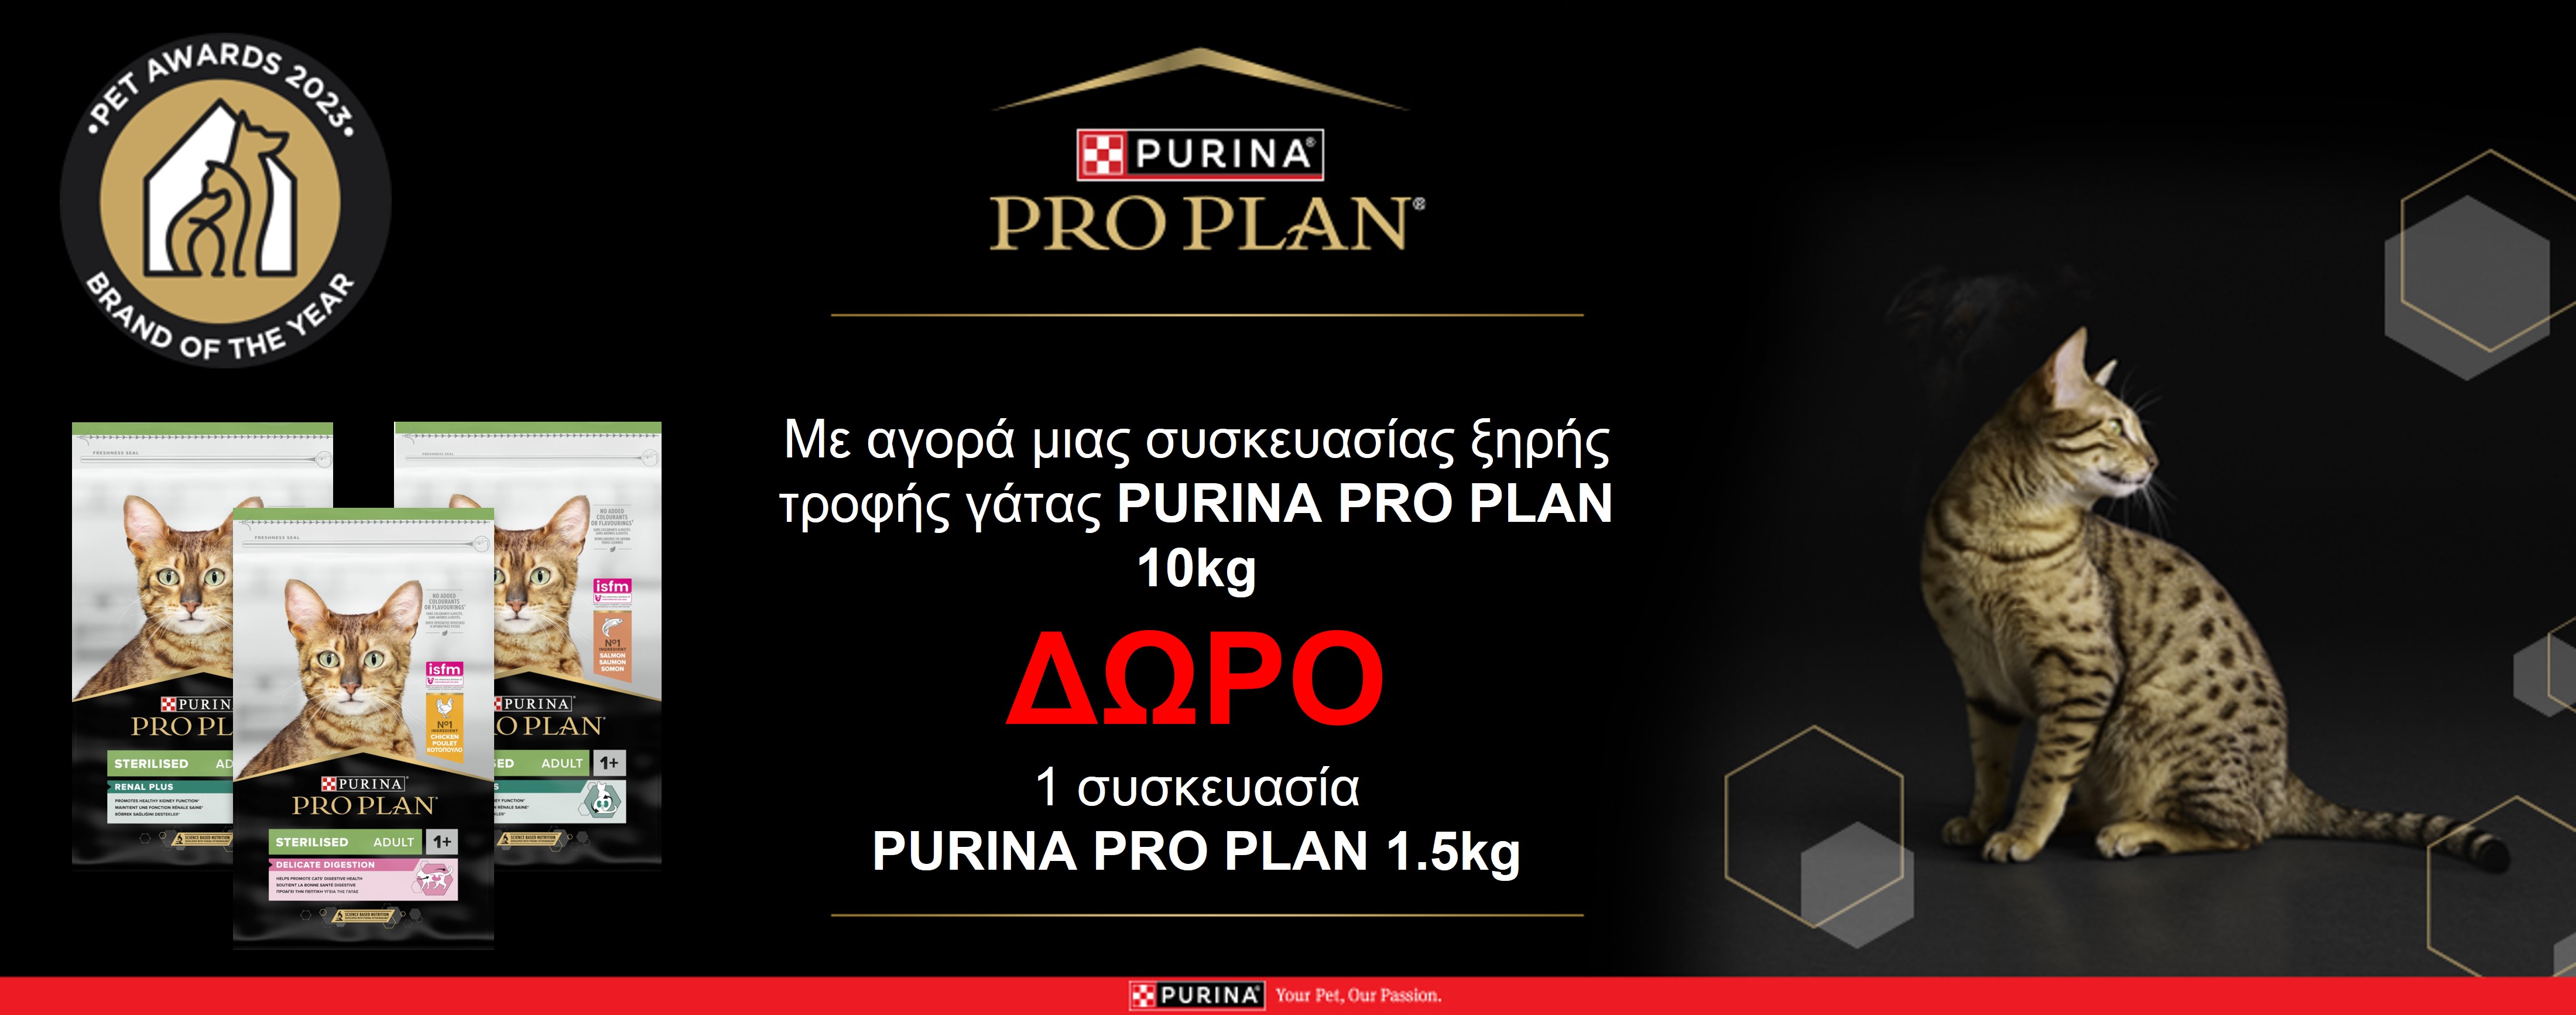 Ξηρά Τροφή Purina Pro Plan Γάτας 10kg + Δώρο 1,5 kg της Ίδιας Τροφής